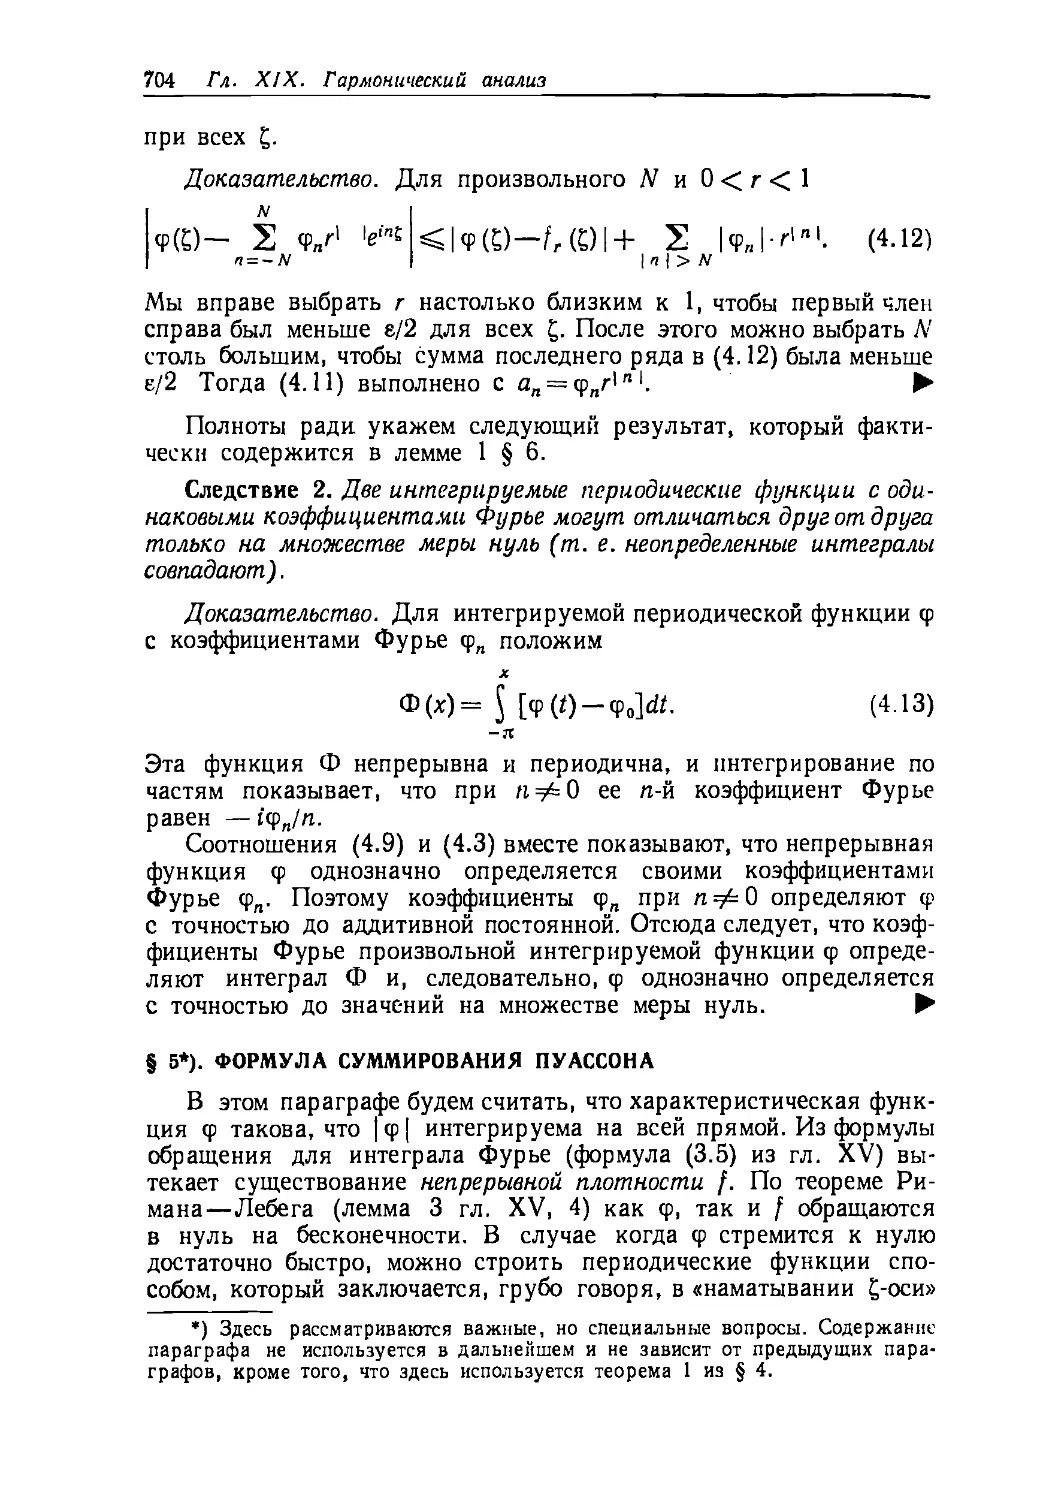 § 5. Формула суммирования Пуассона